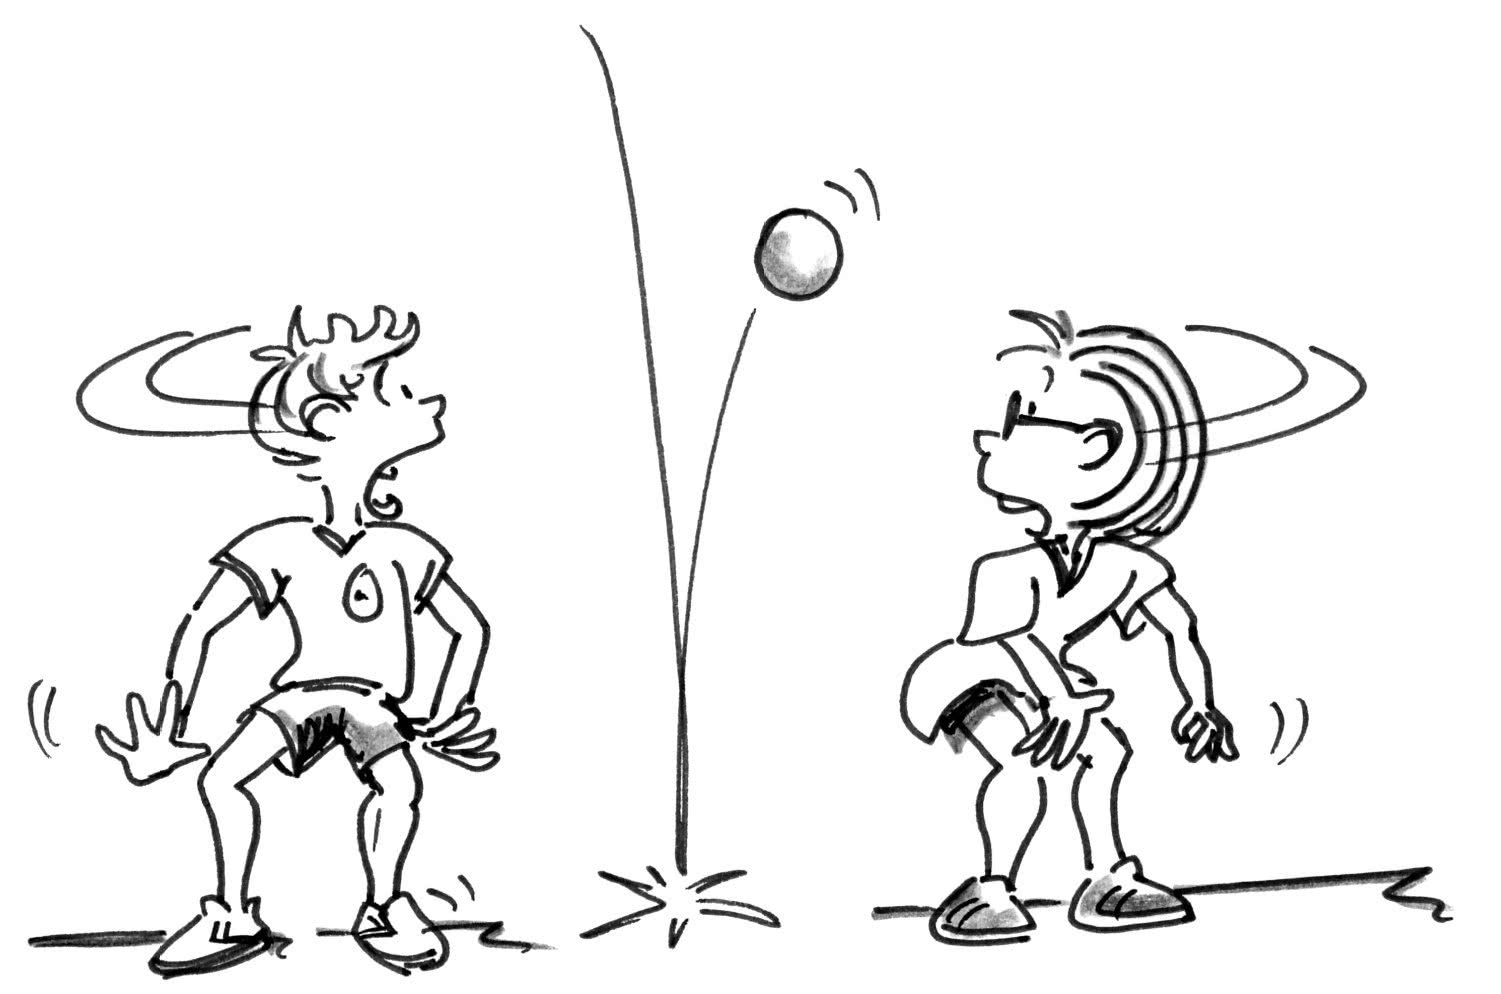 Comic: Zwei Schüler nebeneinander, ein Ball prellt zwischen ihnen am Boden.